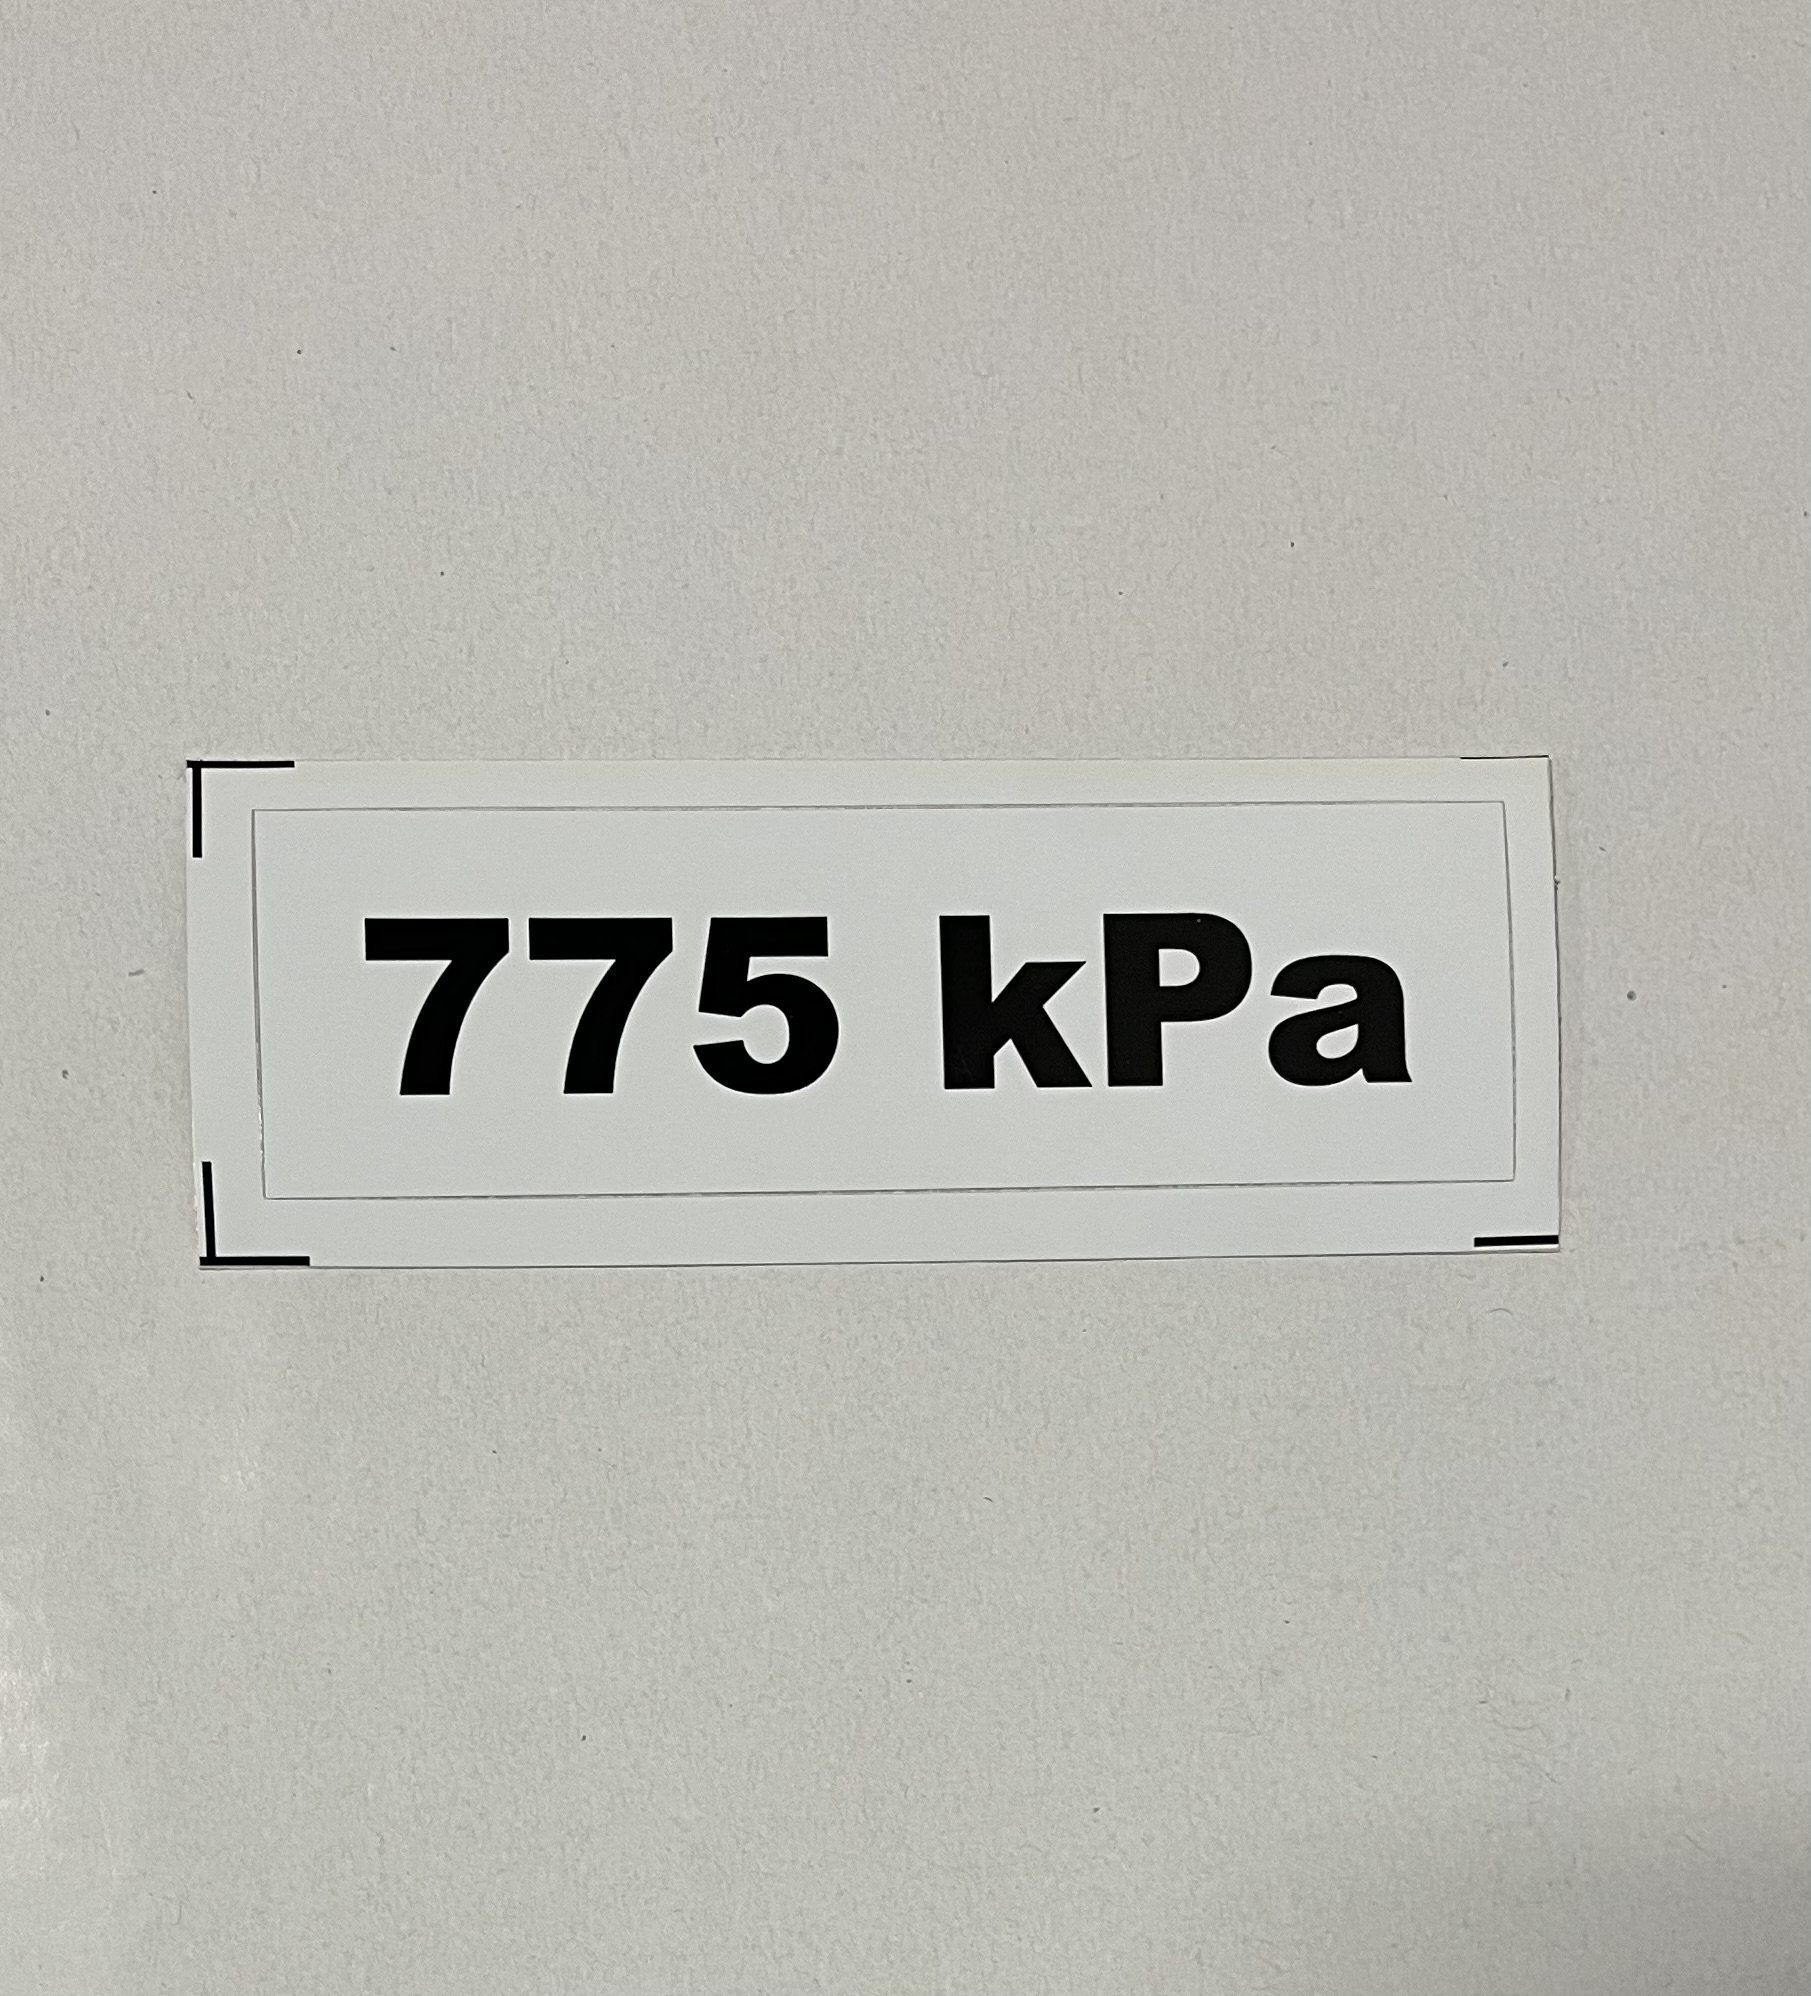 Označenie kPa 775